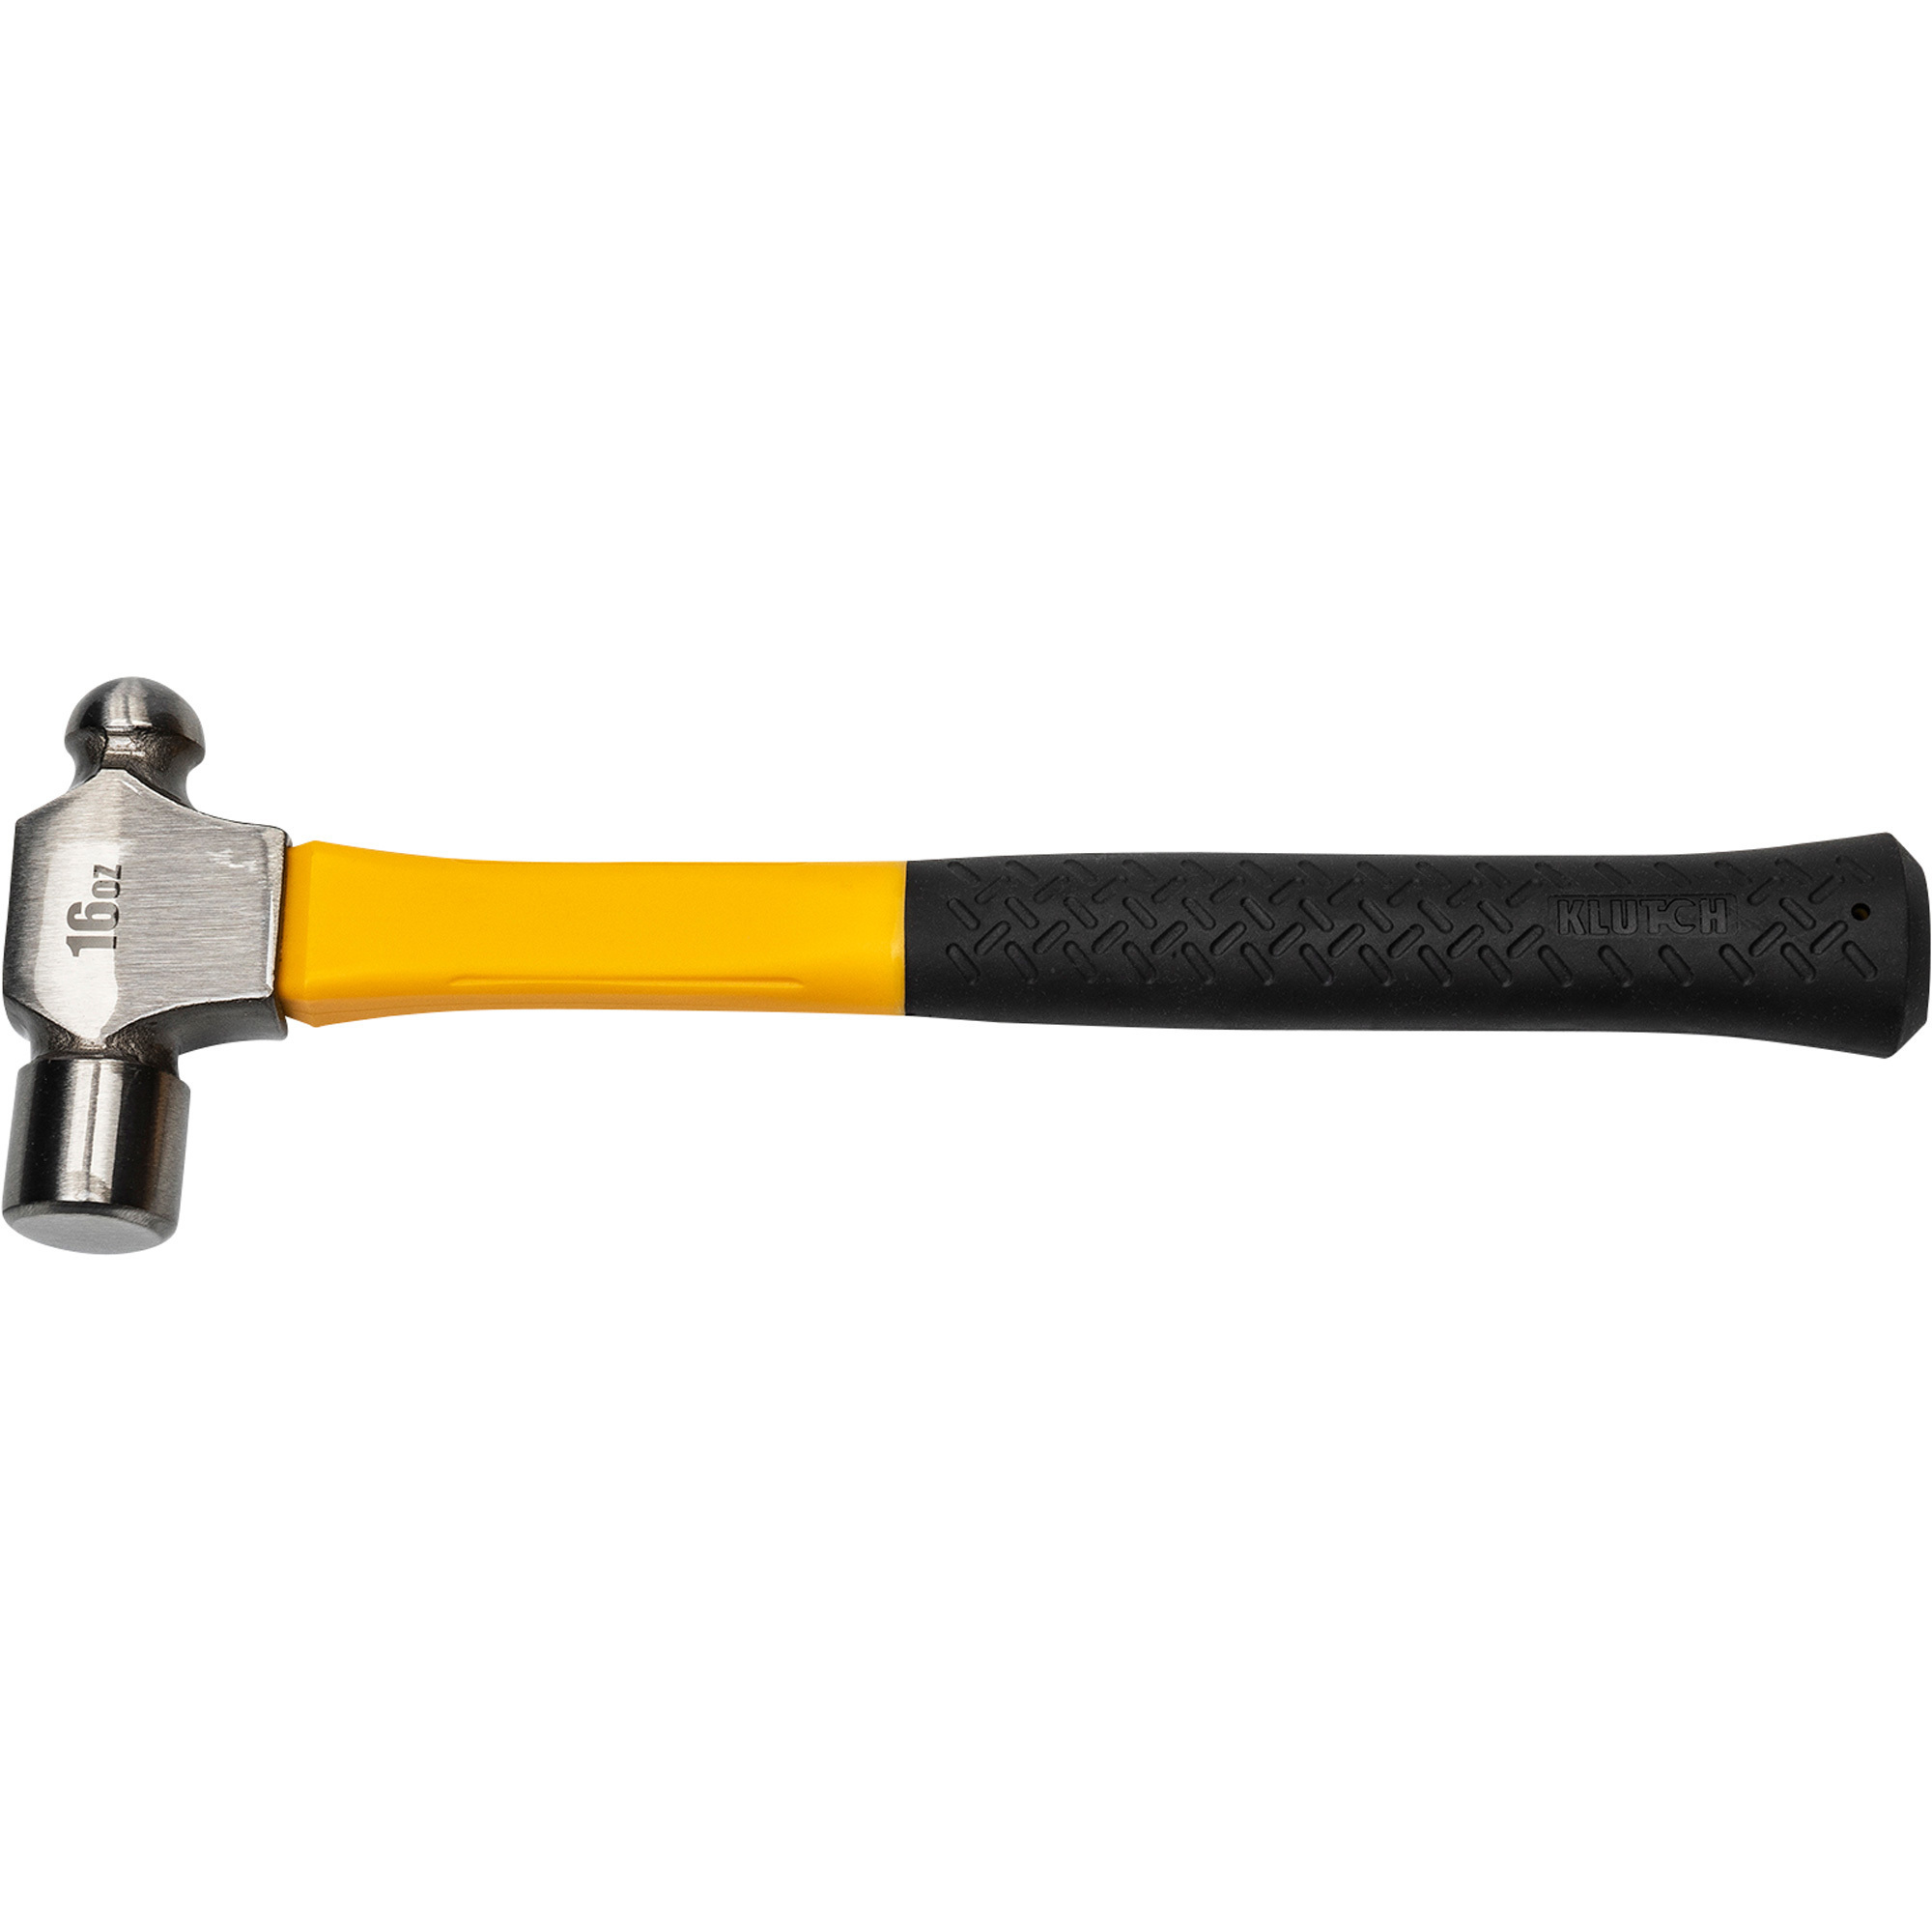 Klutch 8-Oz. Ball Pein Hammer, Model 90041